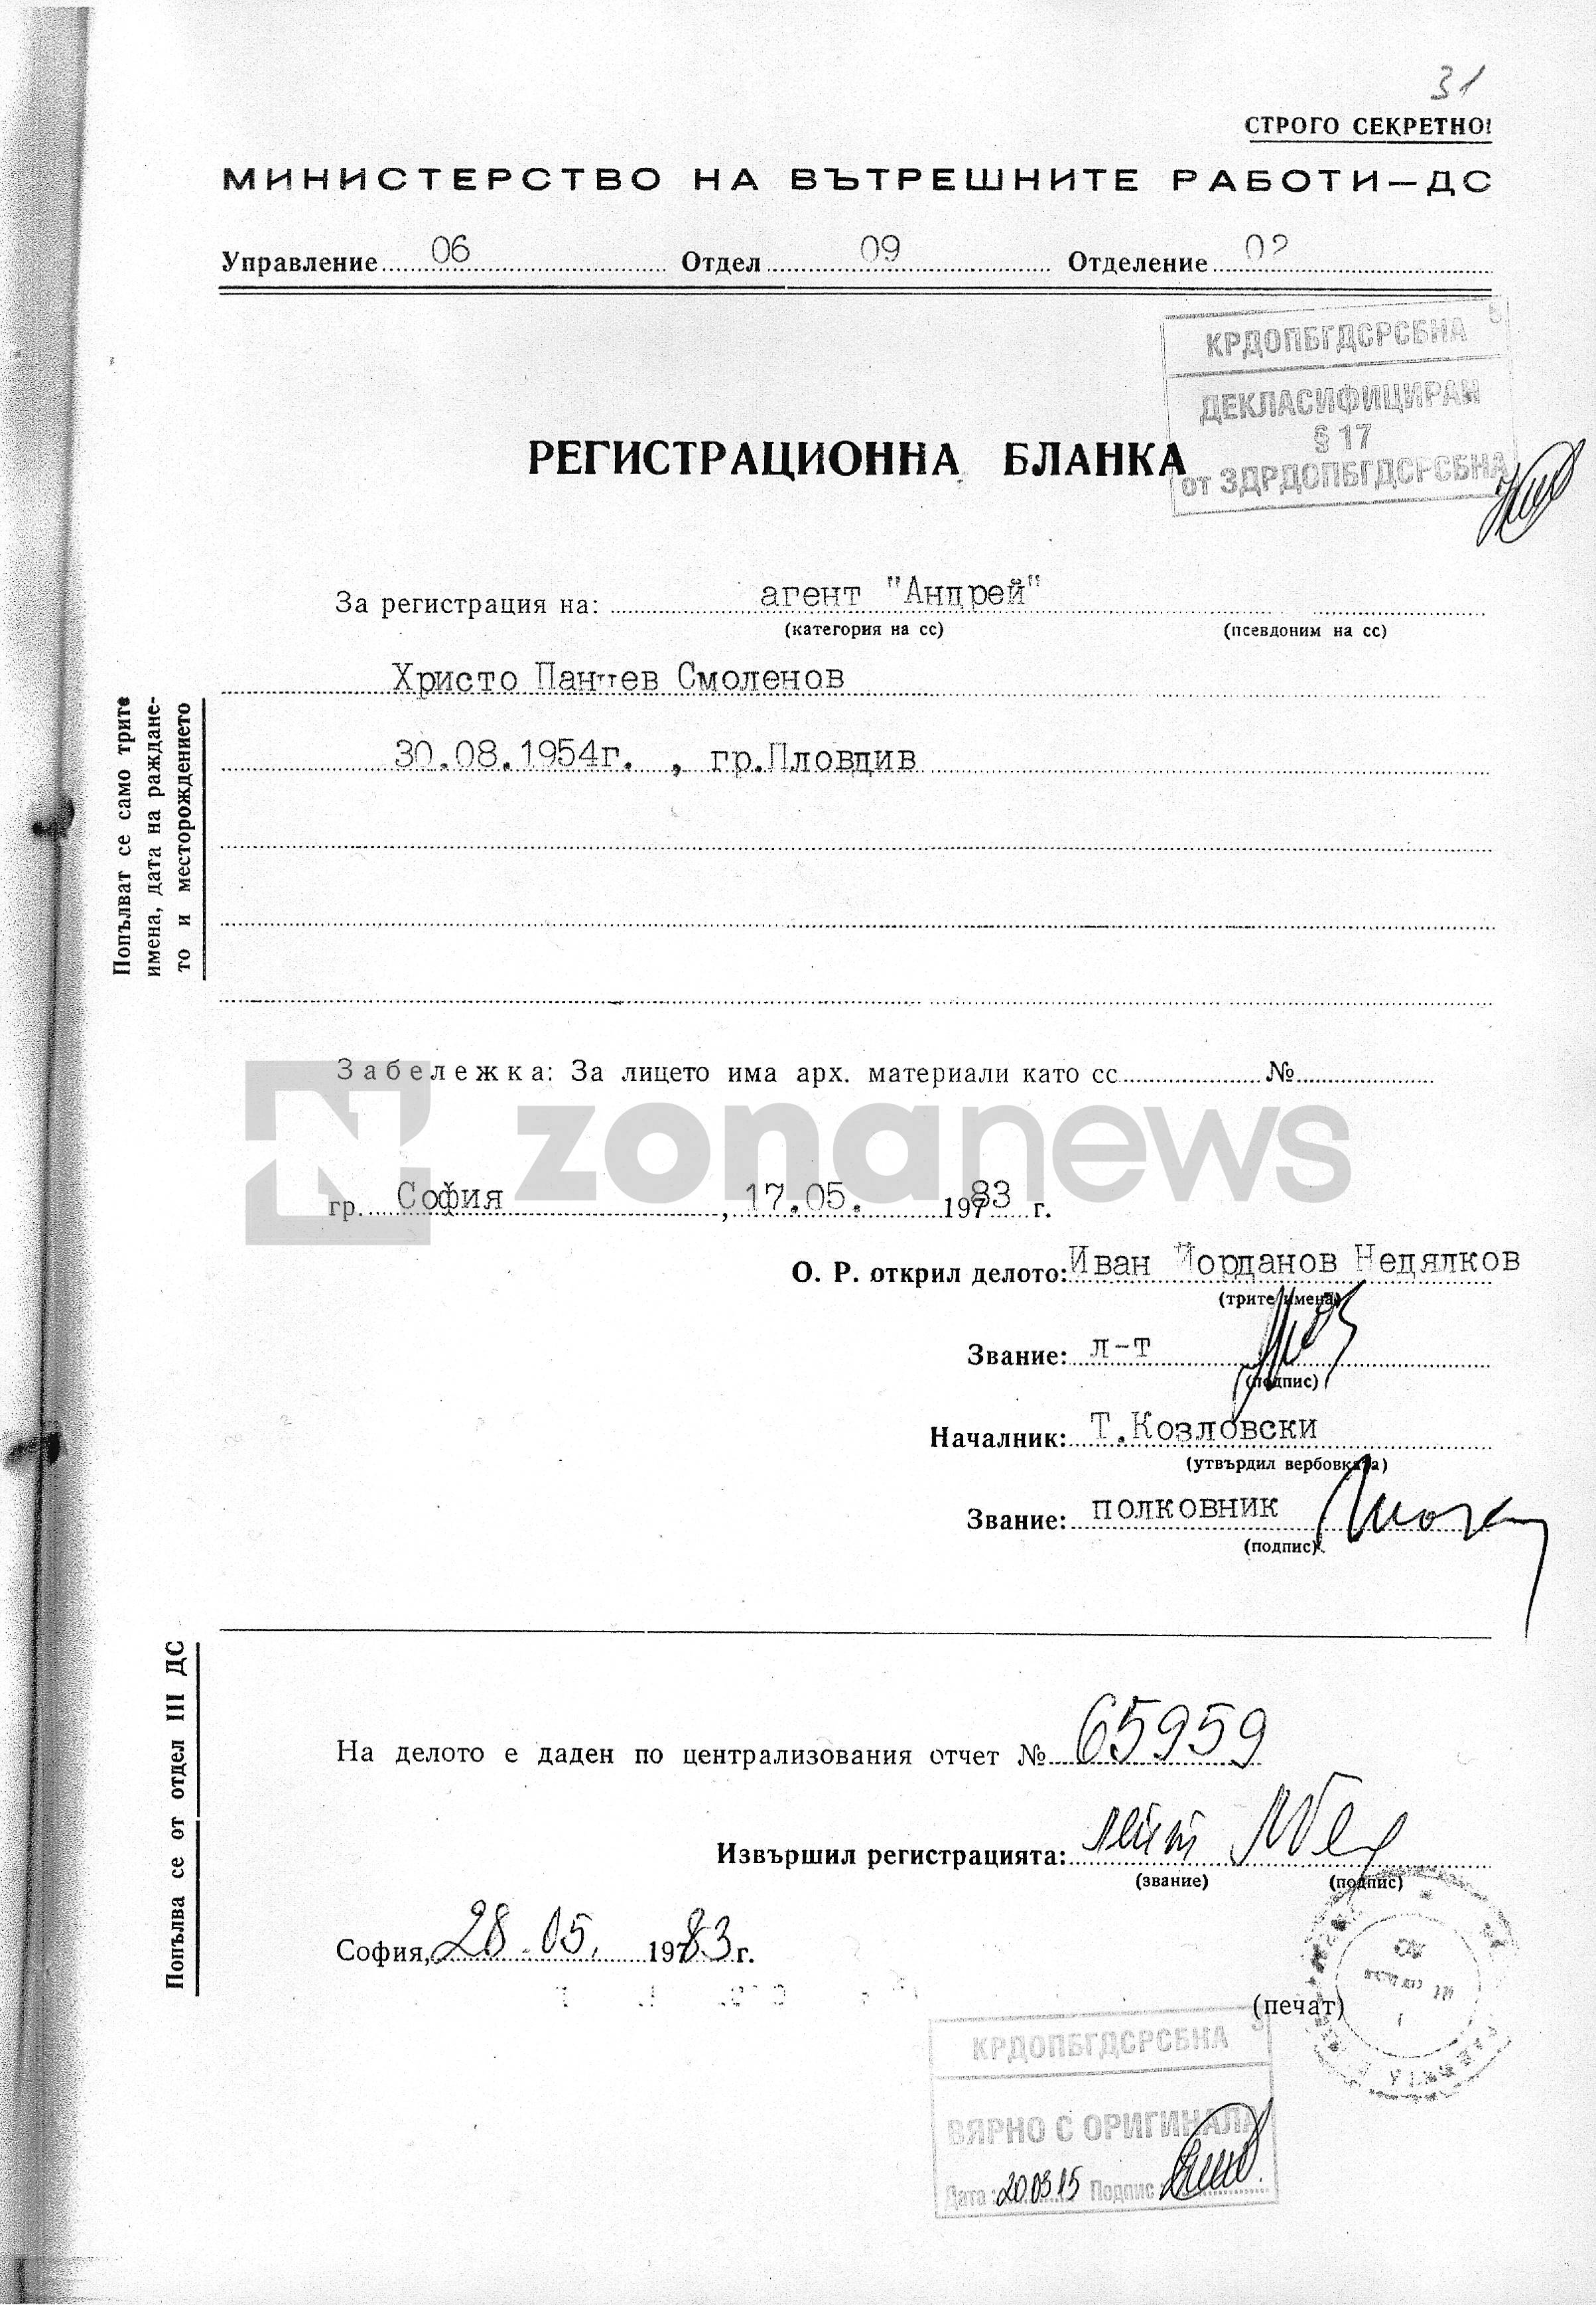 Регистрационната бланка на Христо Смоленов като агент Андрей на Шесто у-ние на ДС